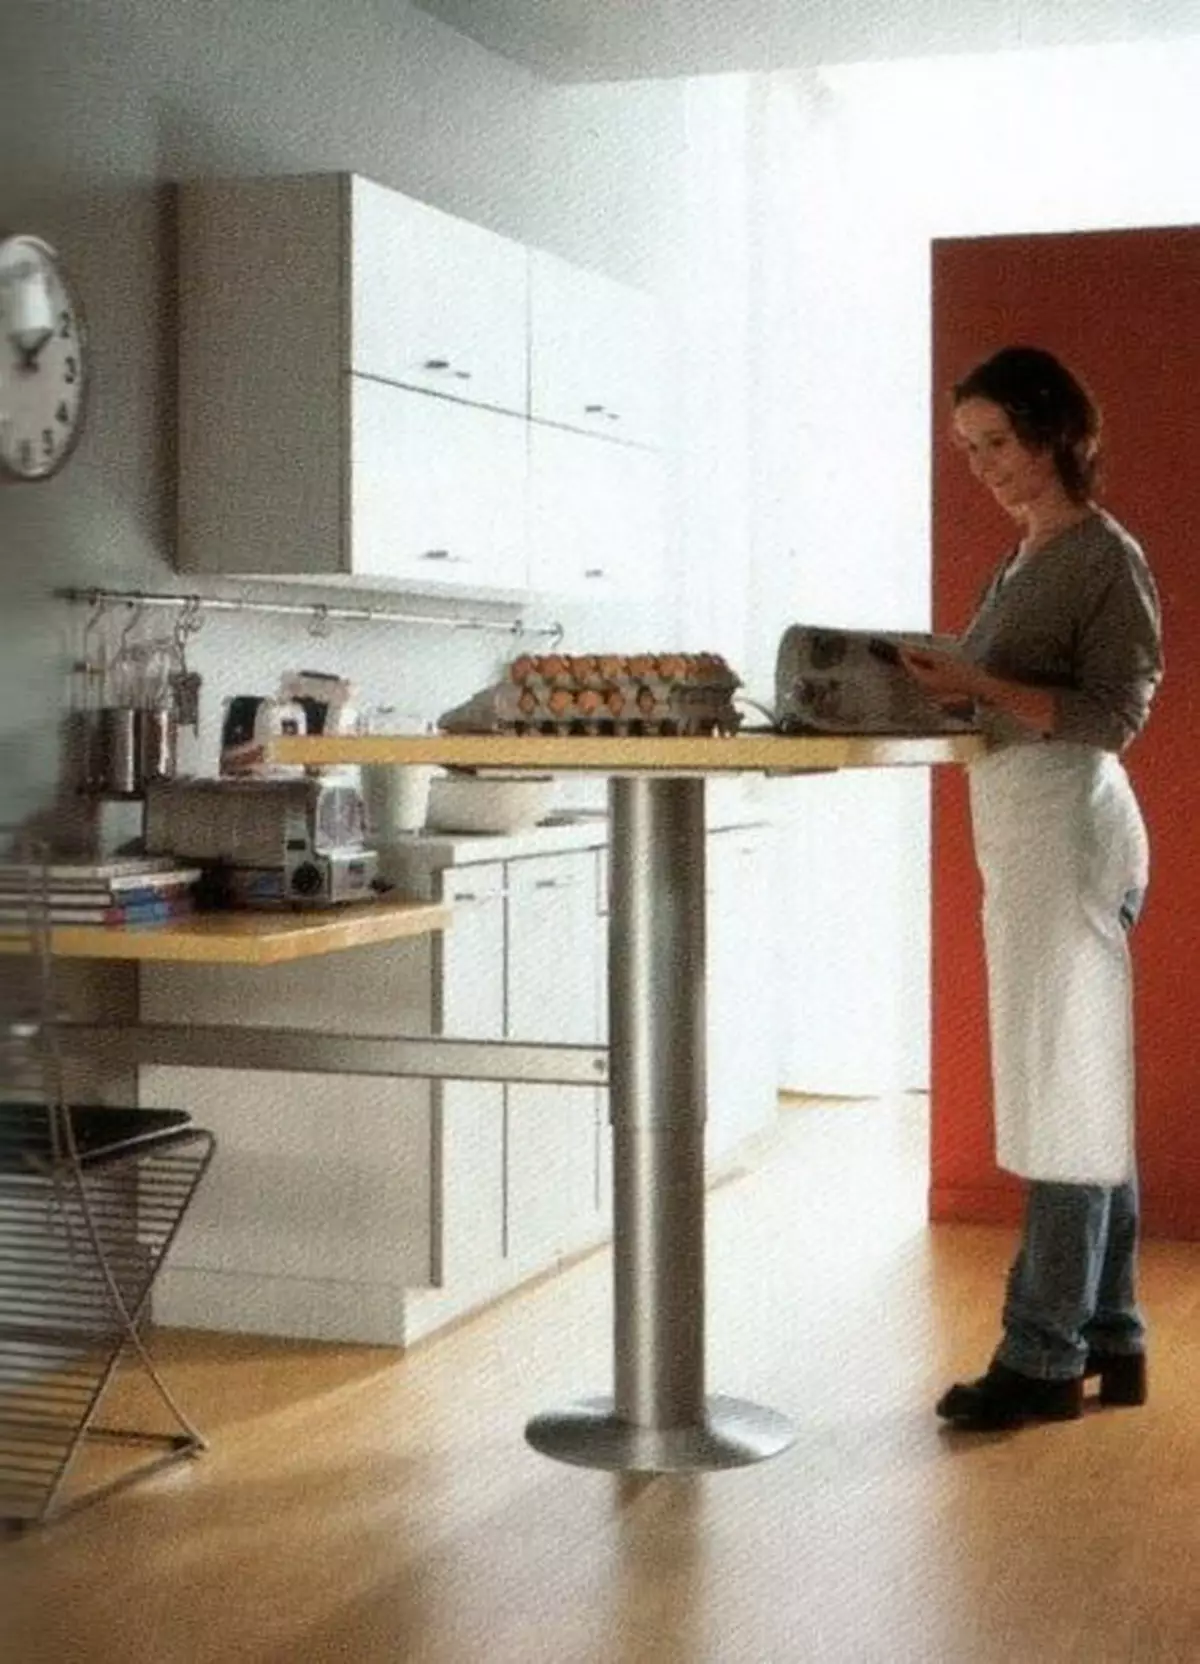 Køkkenarbejdere Borde (49 billeder): Mobile skæreborde til køkkener fra hovedlister, produktion Professionelle borde med hylder og andre muligheder 24846_31